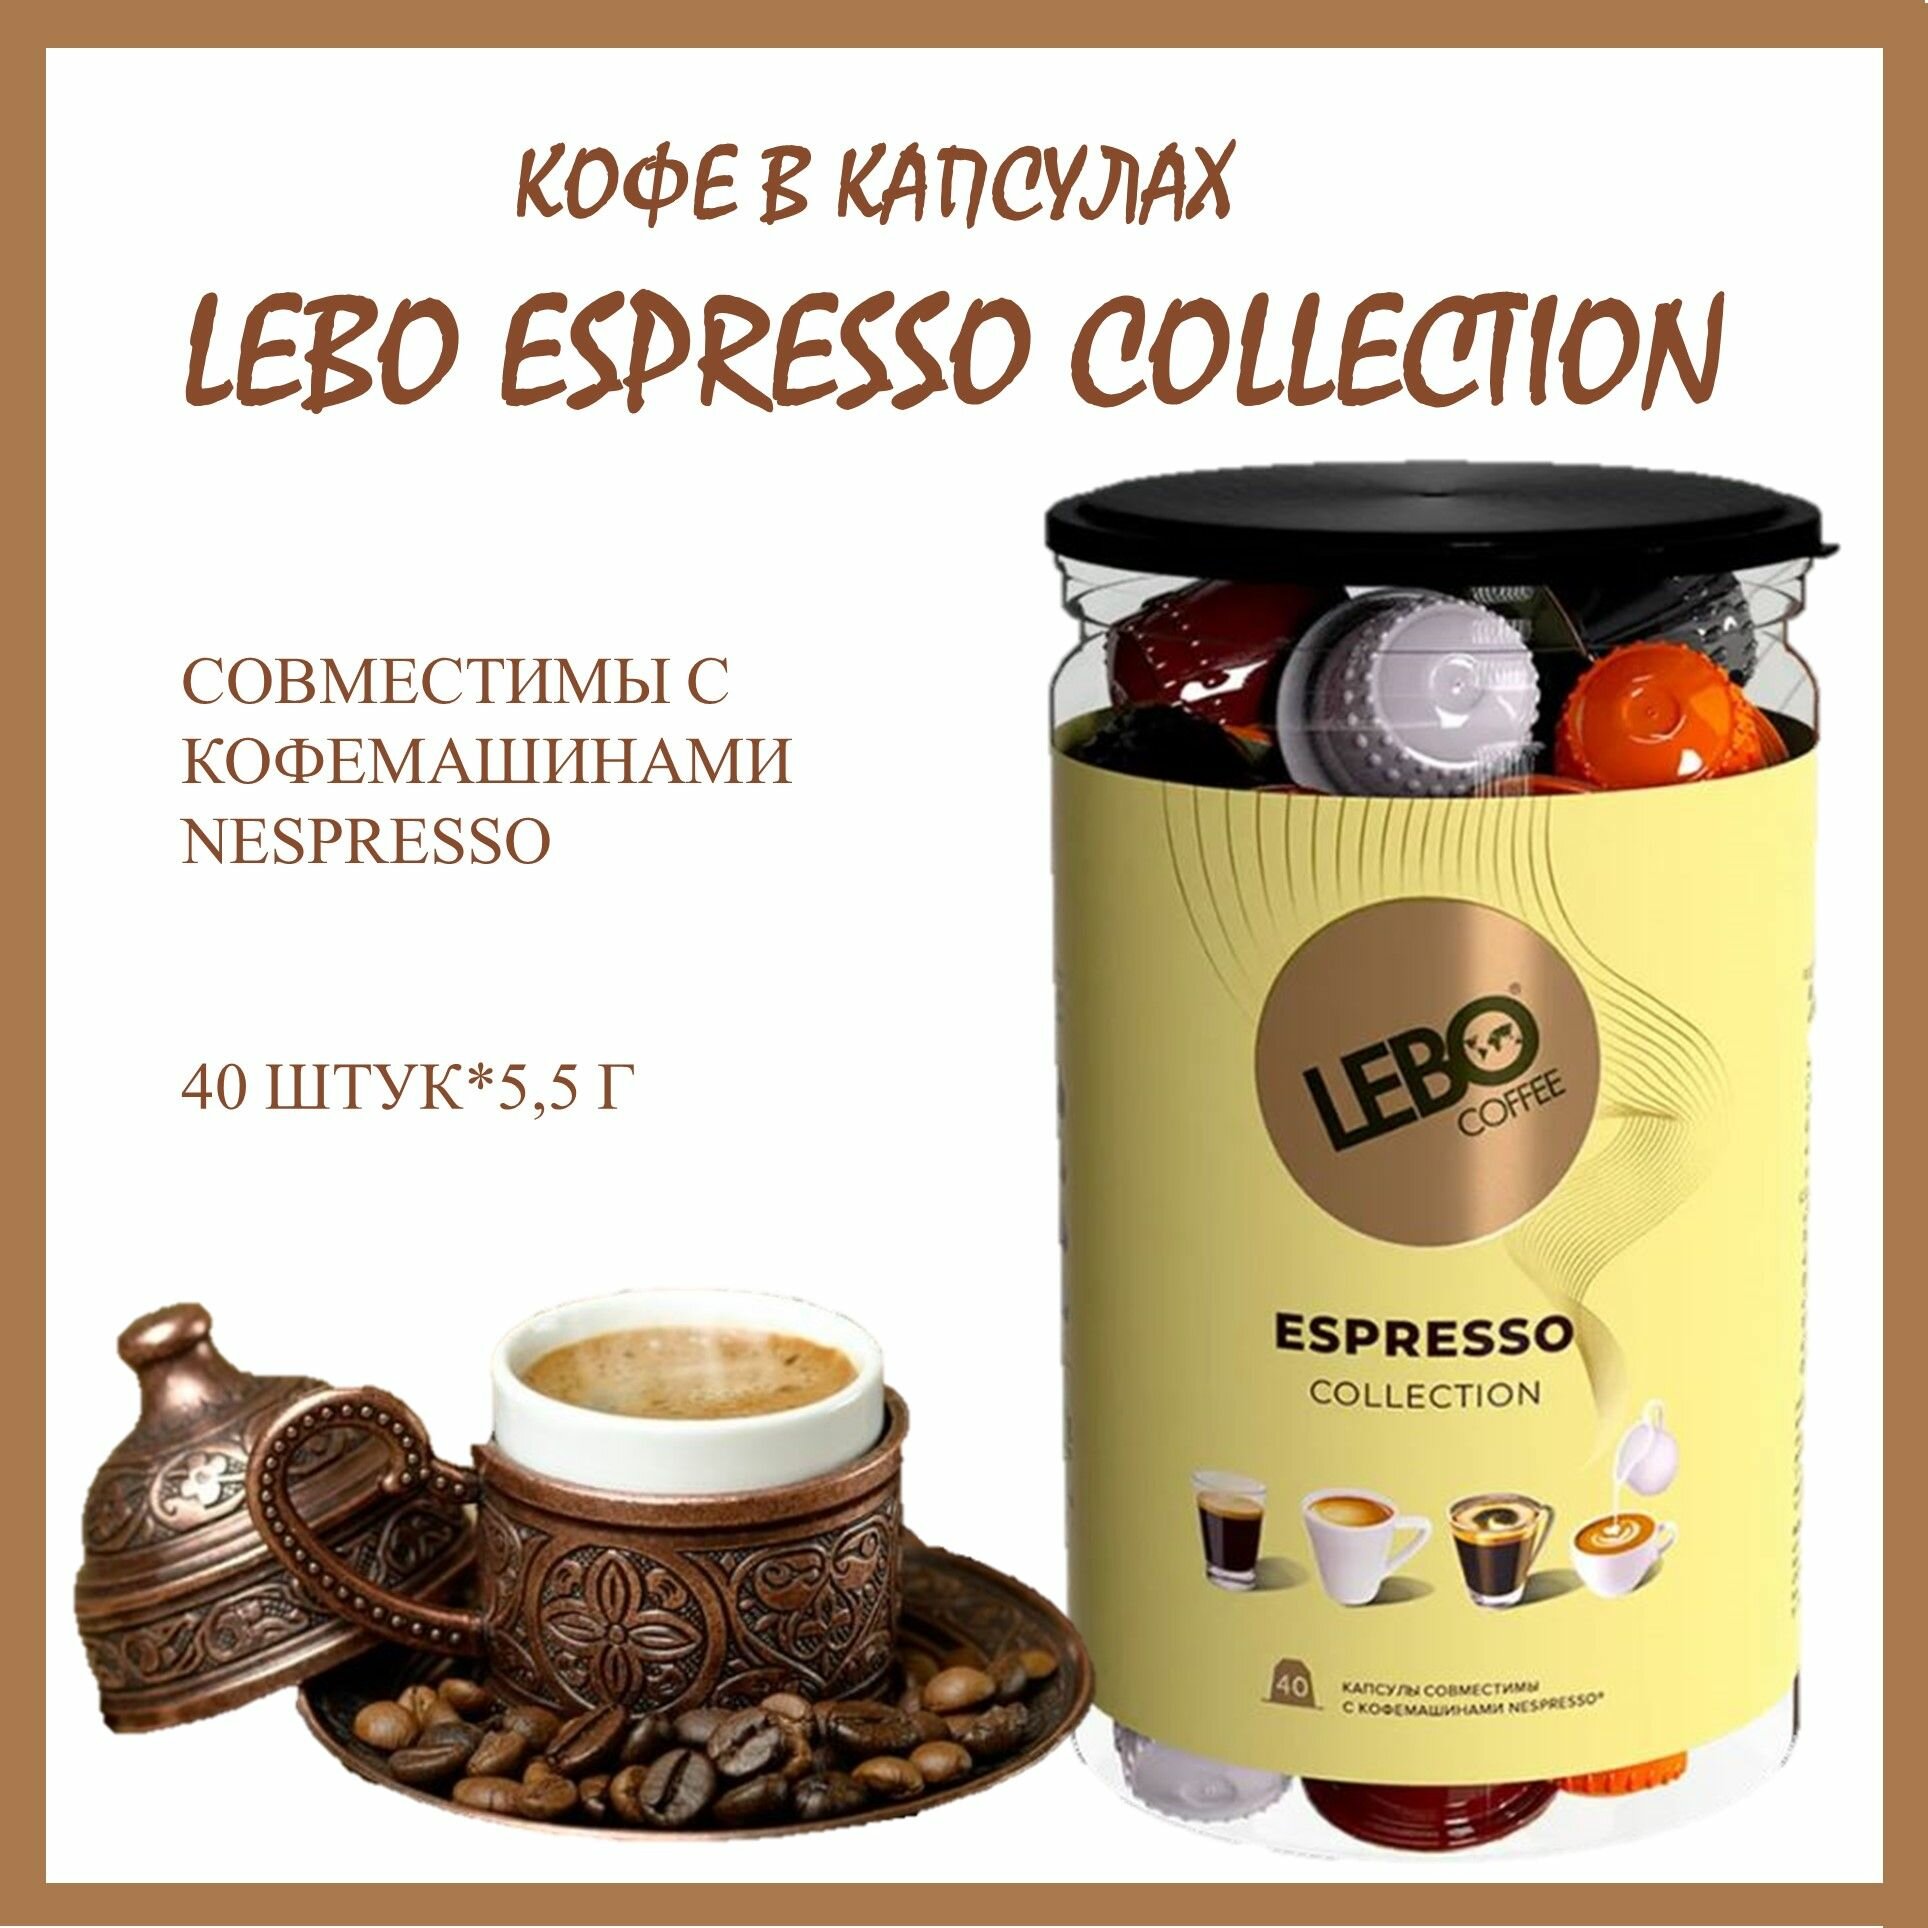 Кофе в капсулах Лебо Эспрессо Коллекшн (Lebo Espresso Collection) для кофемашин Nespresso 40 капсул * 5,5 г/ Россия